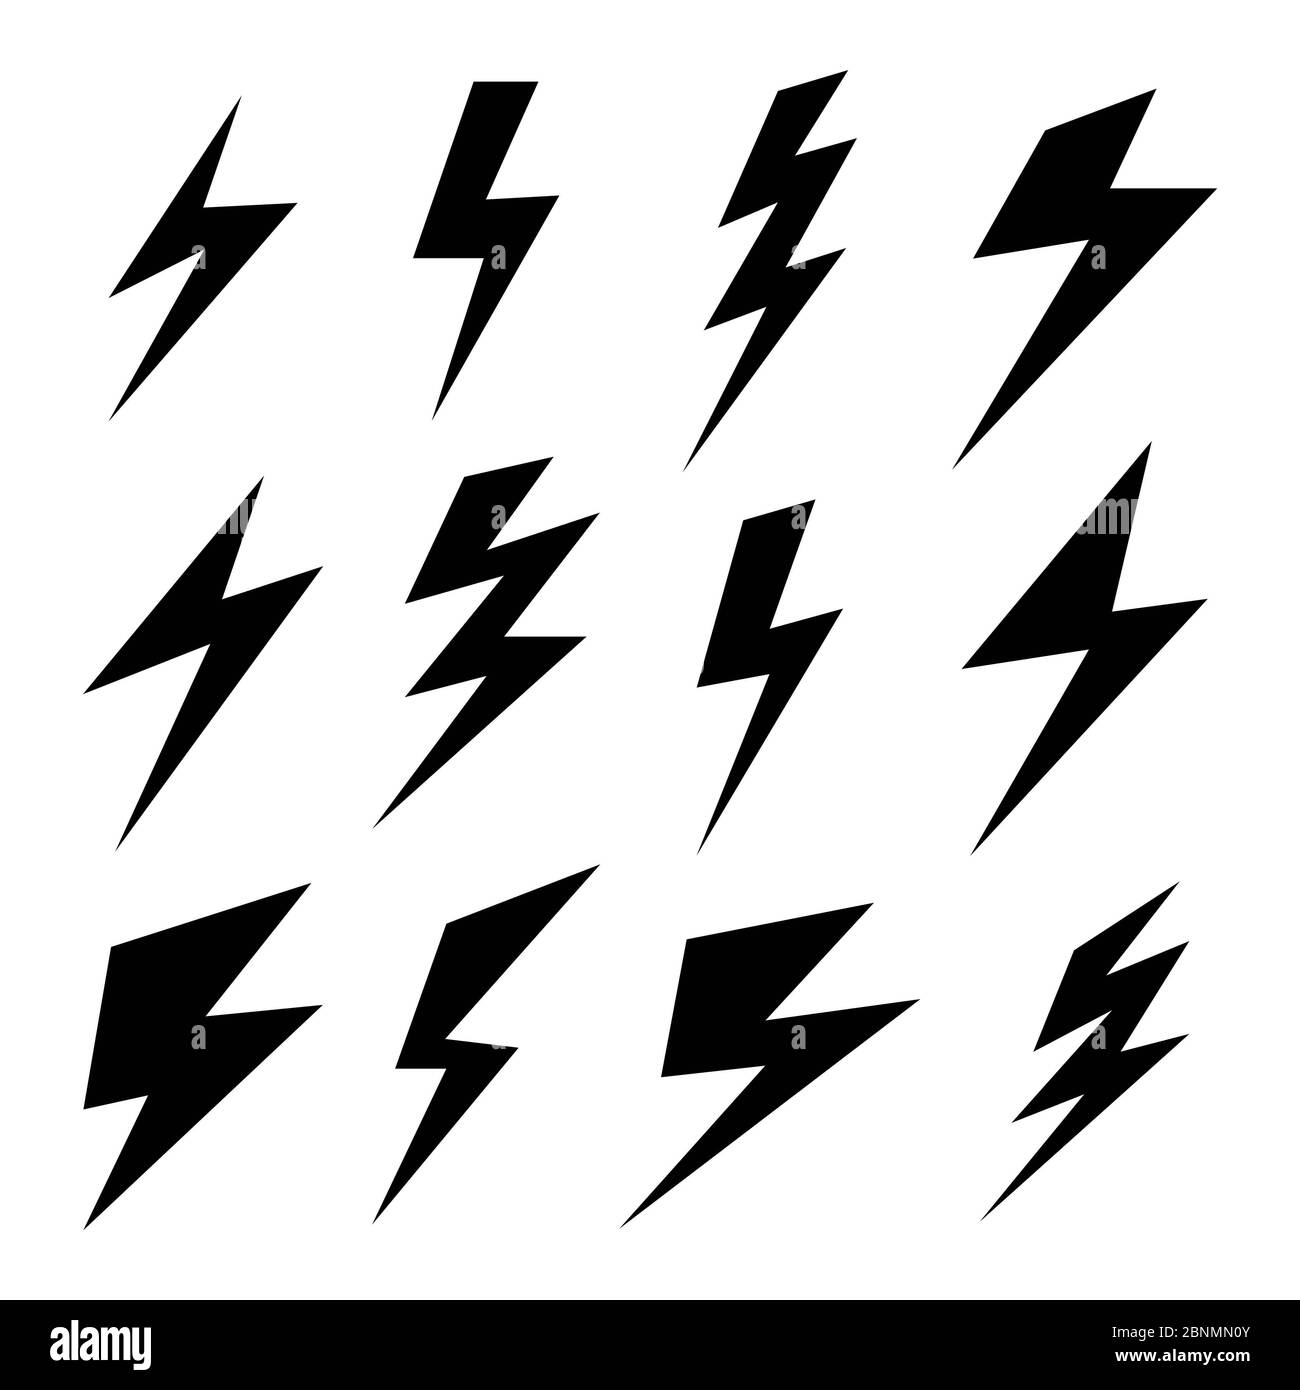 Black icons of thunder or lightning vector signs. Thunder strike logo Stock Photo